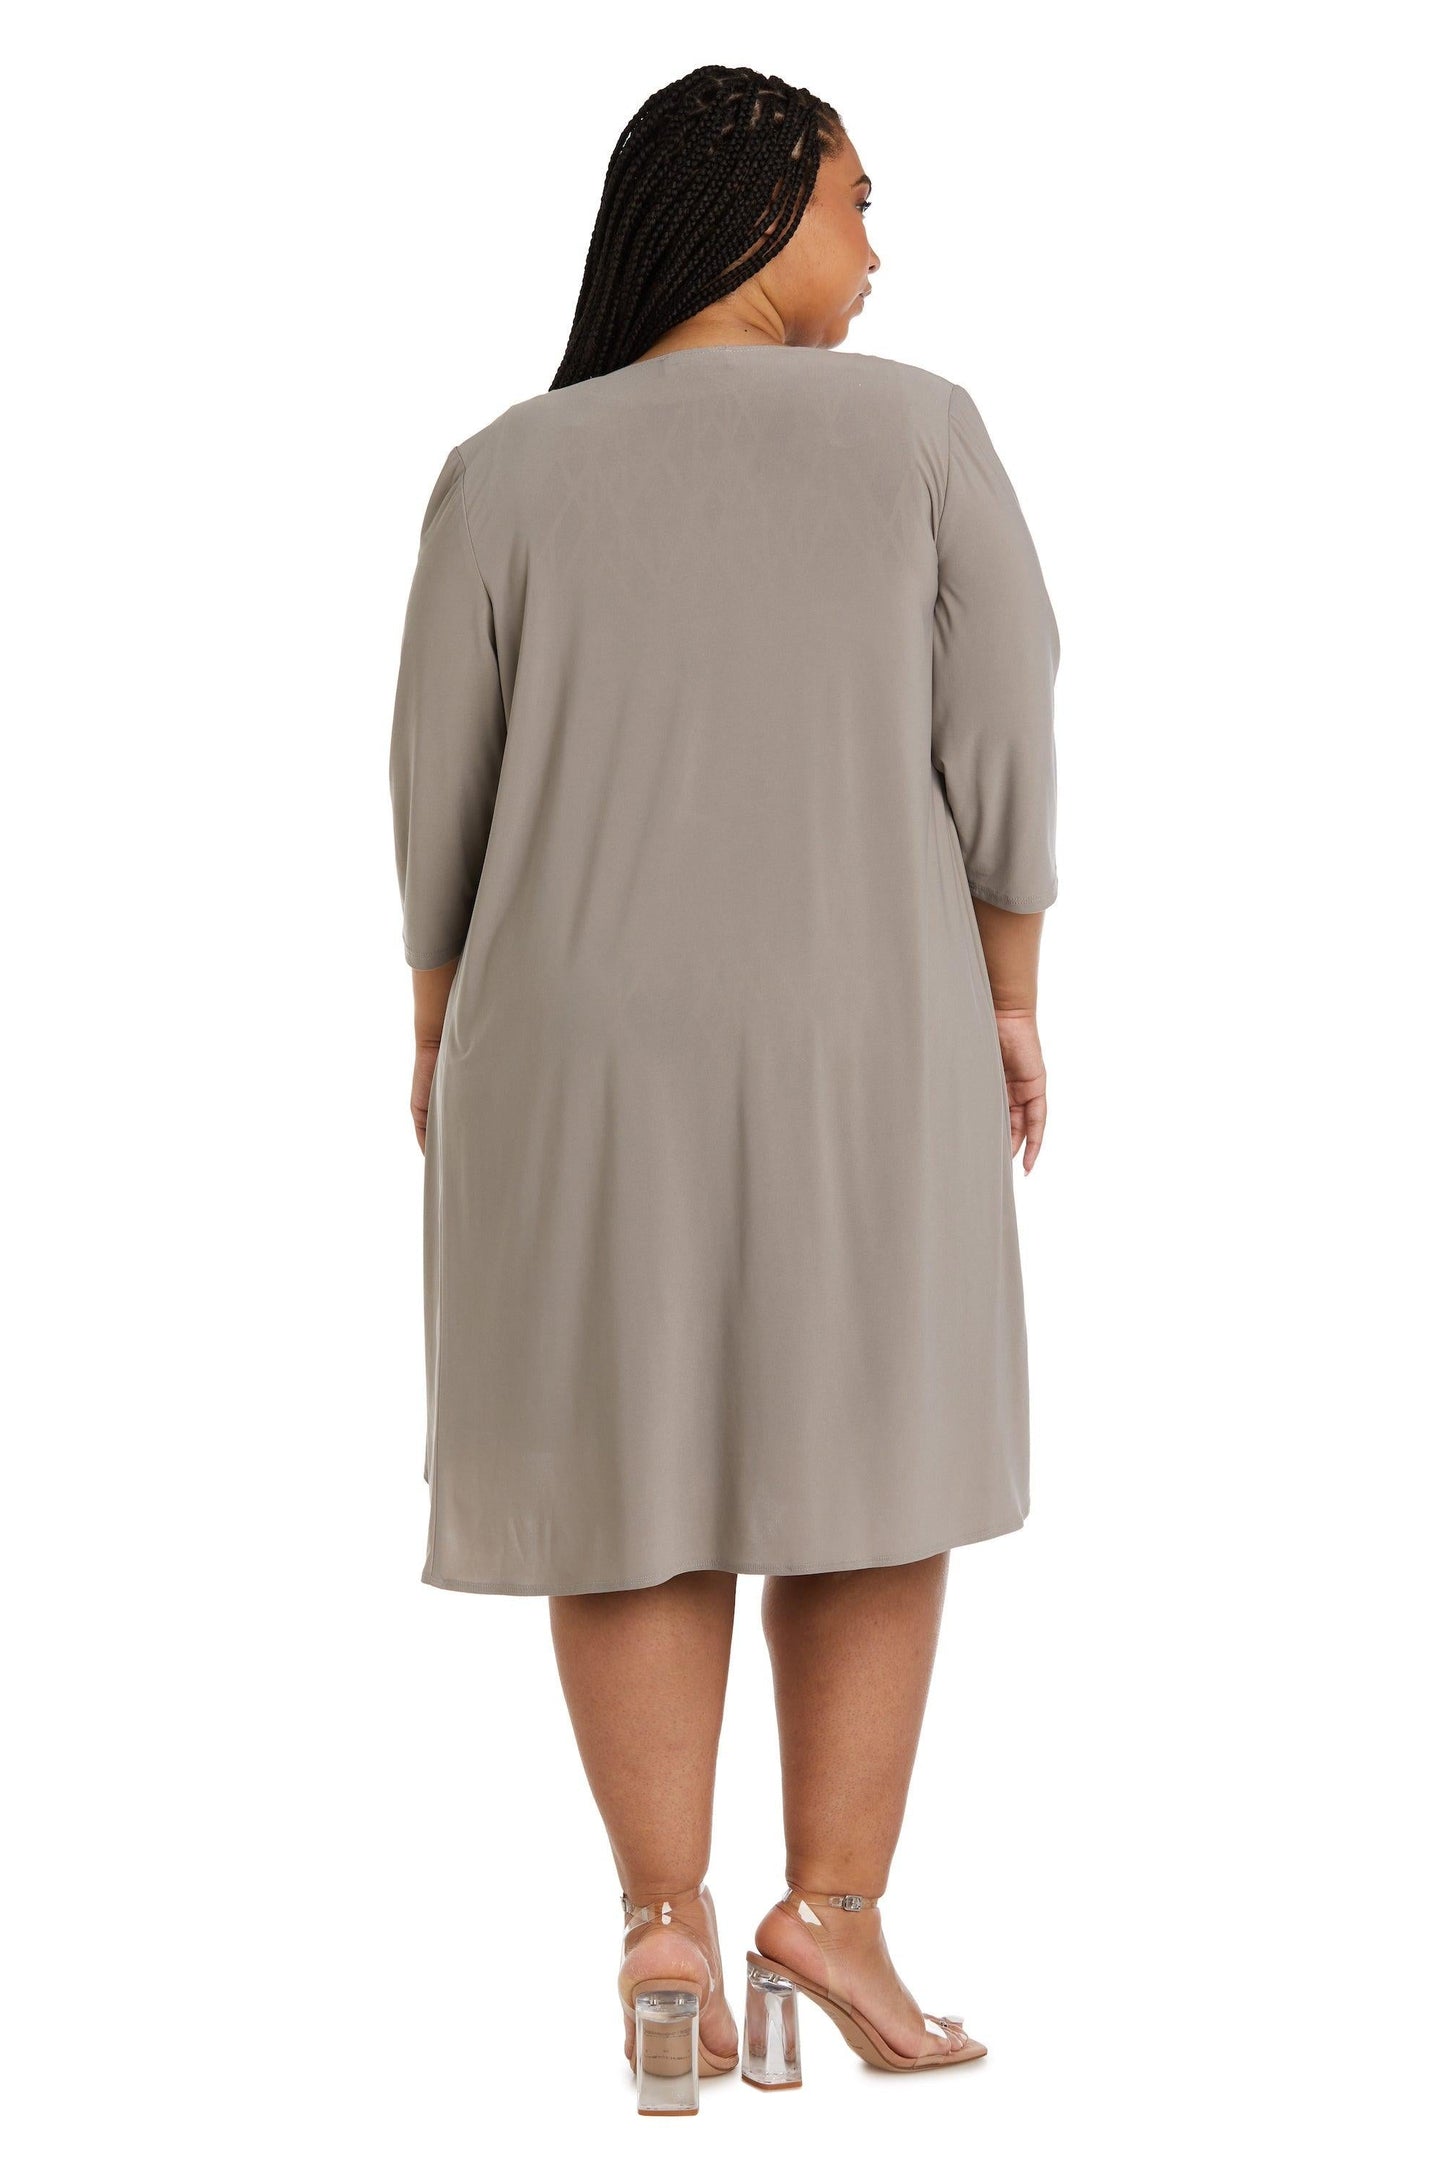 R&M Richards Short Plus Size Jacket Dress Sale - The Dress Outlet